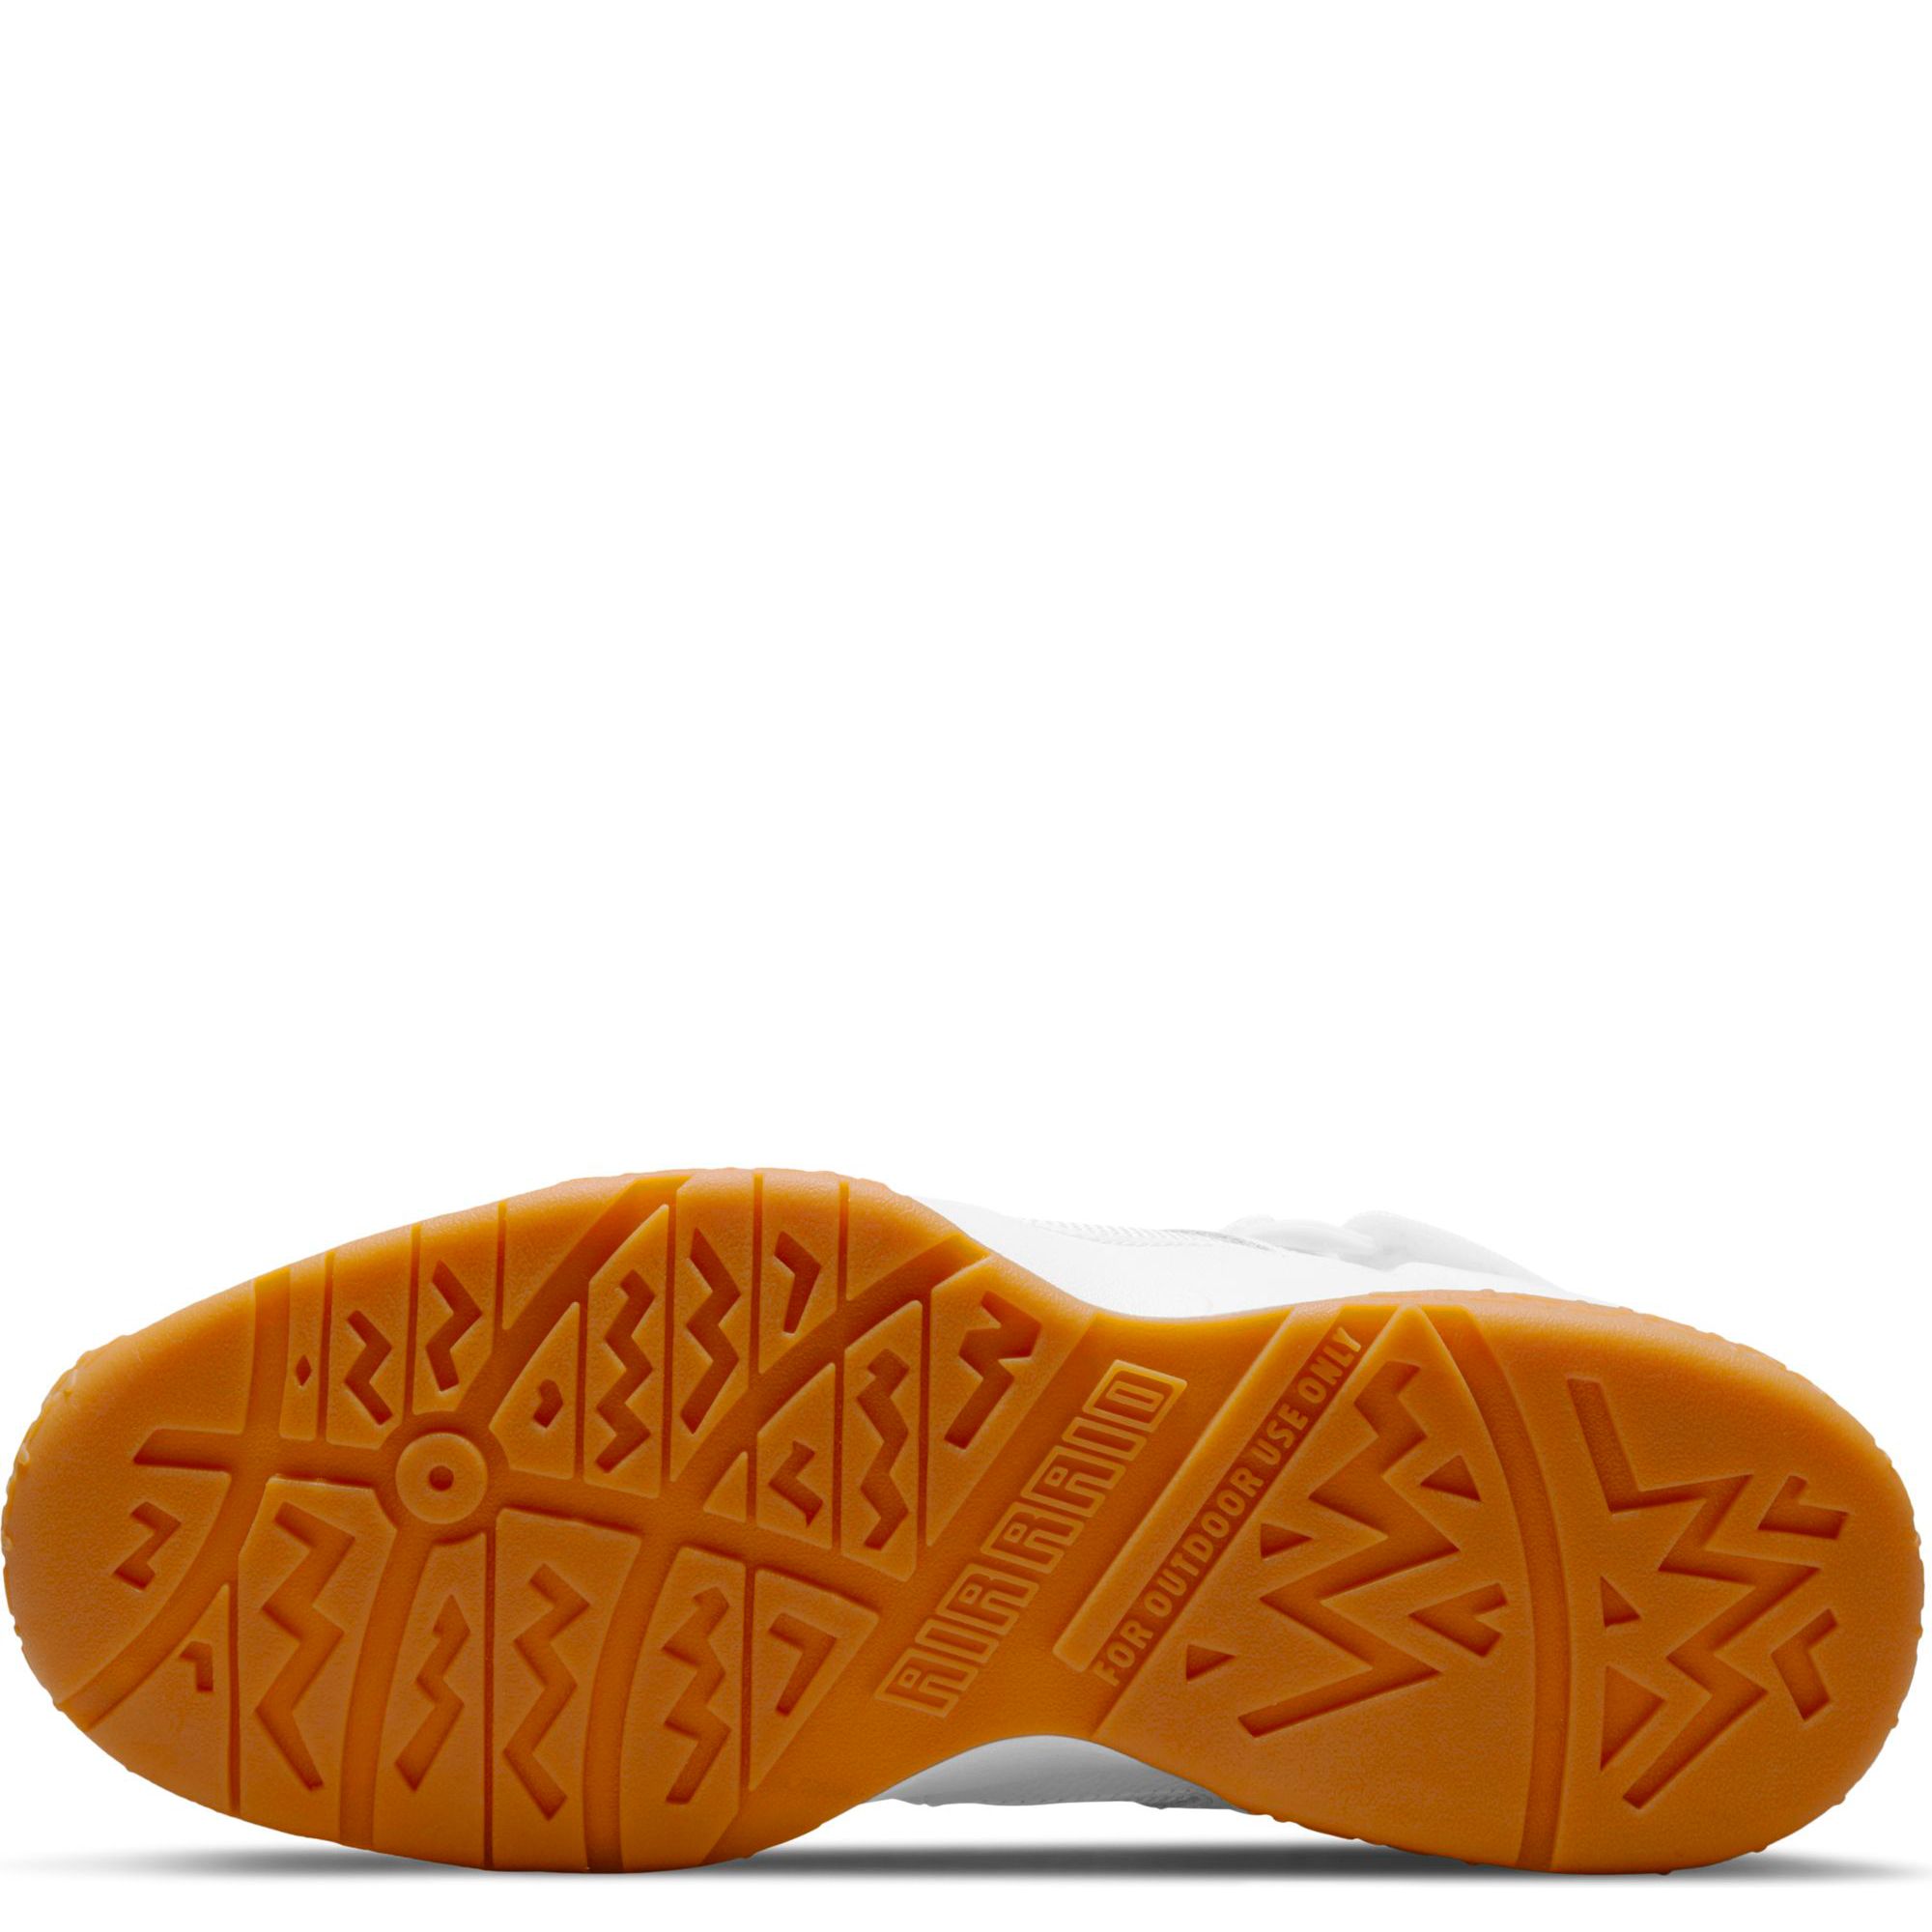 Nike Air Raid OG White Gum Size 14-15 [DJ5974-100]